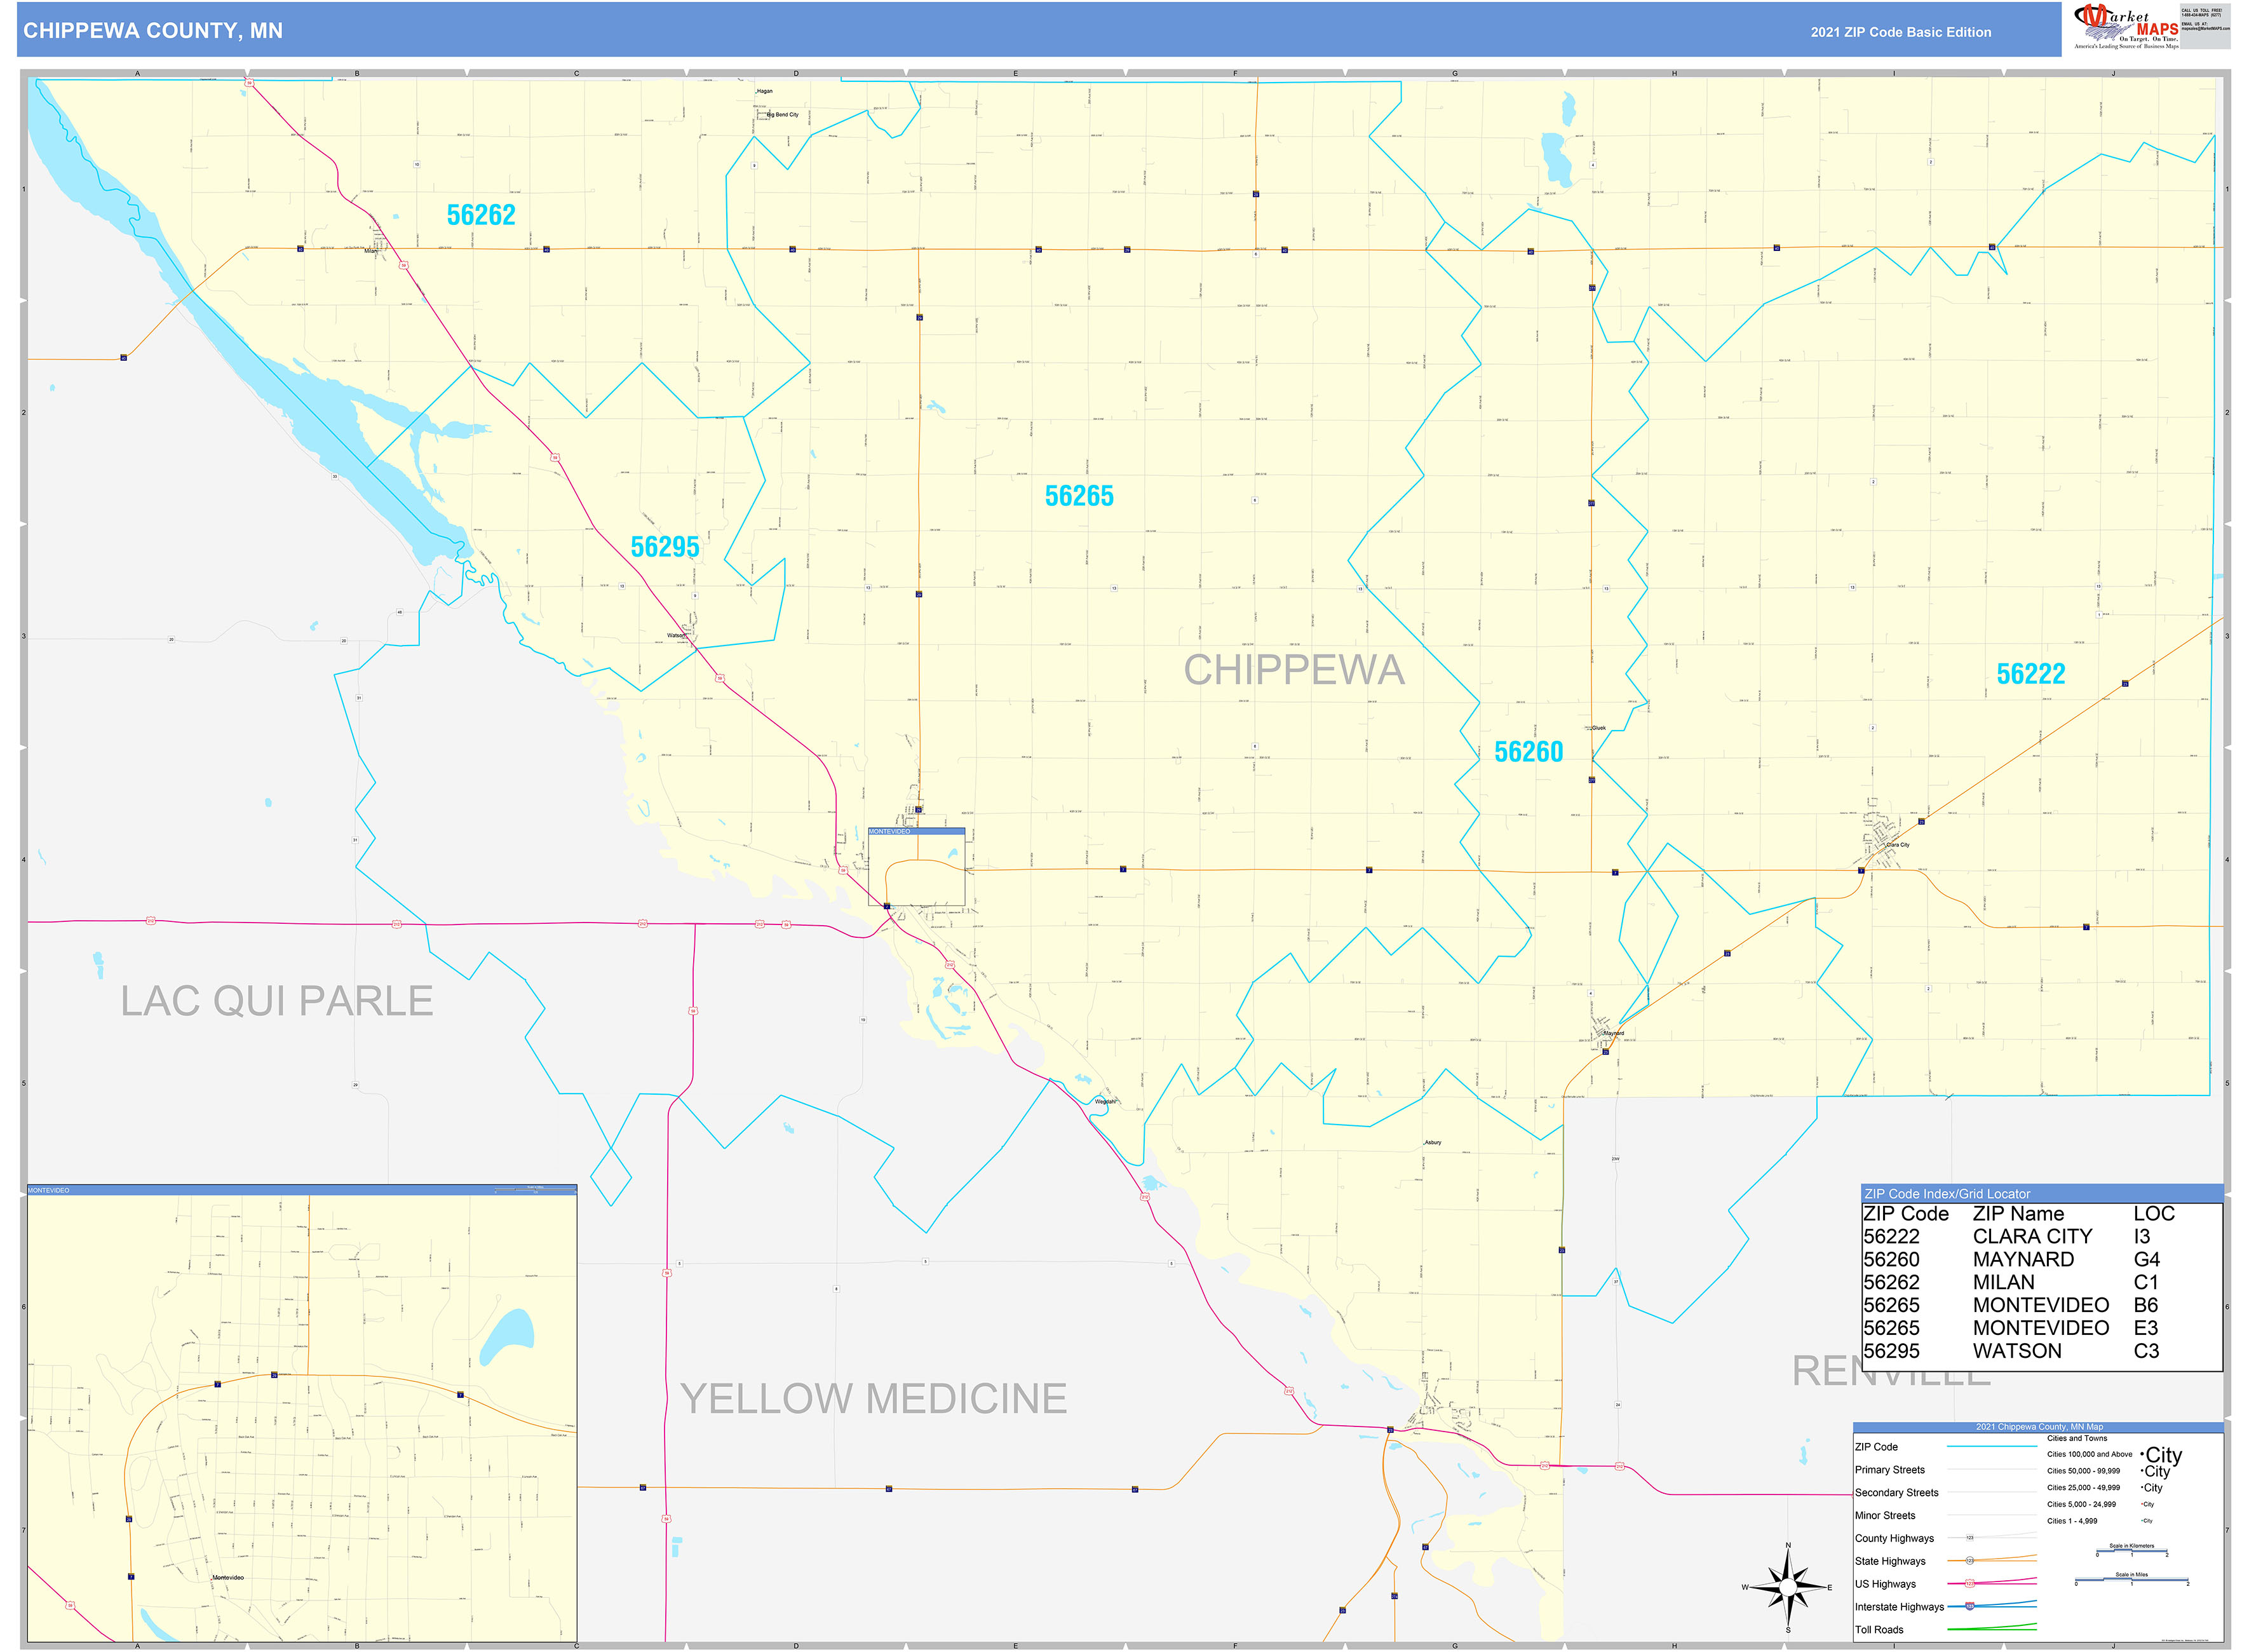 Chippewa County MN Zip Code Wall Map Basic Style by MarketMAPS